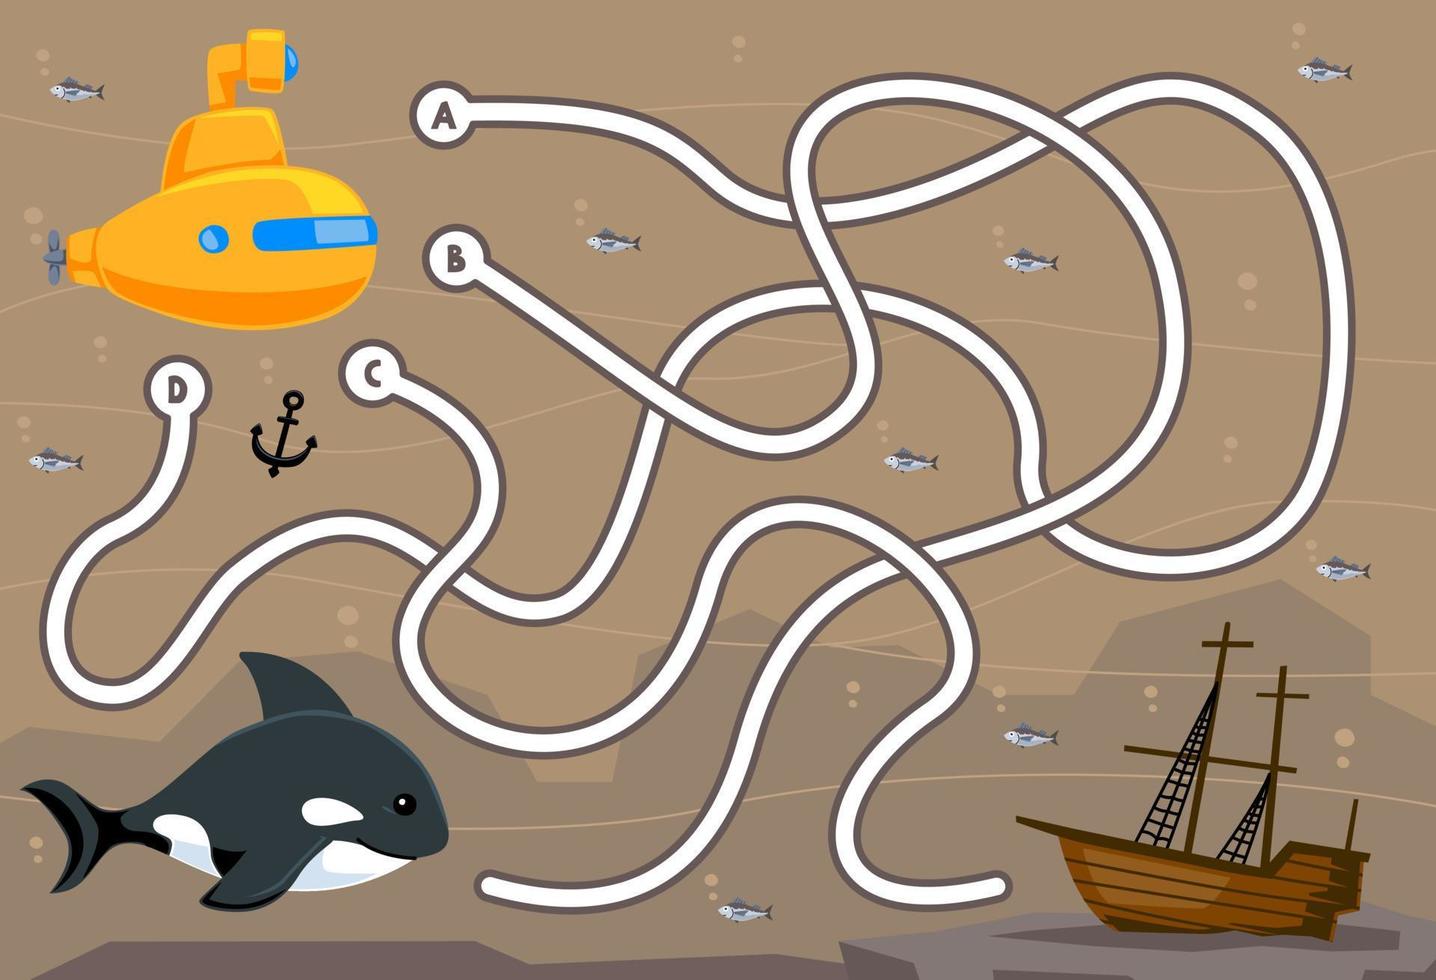 juego de rompecabezas de laberinto para niños con linda orca submarina de dibujos animados y hoja de trabajo subacuática imprimible de barco naufragado vector